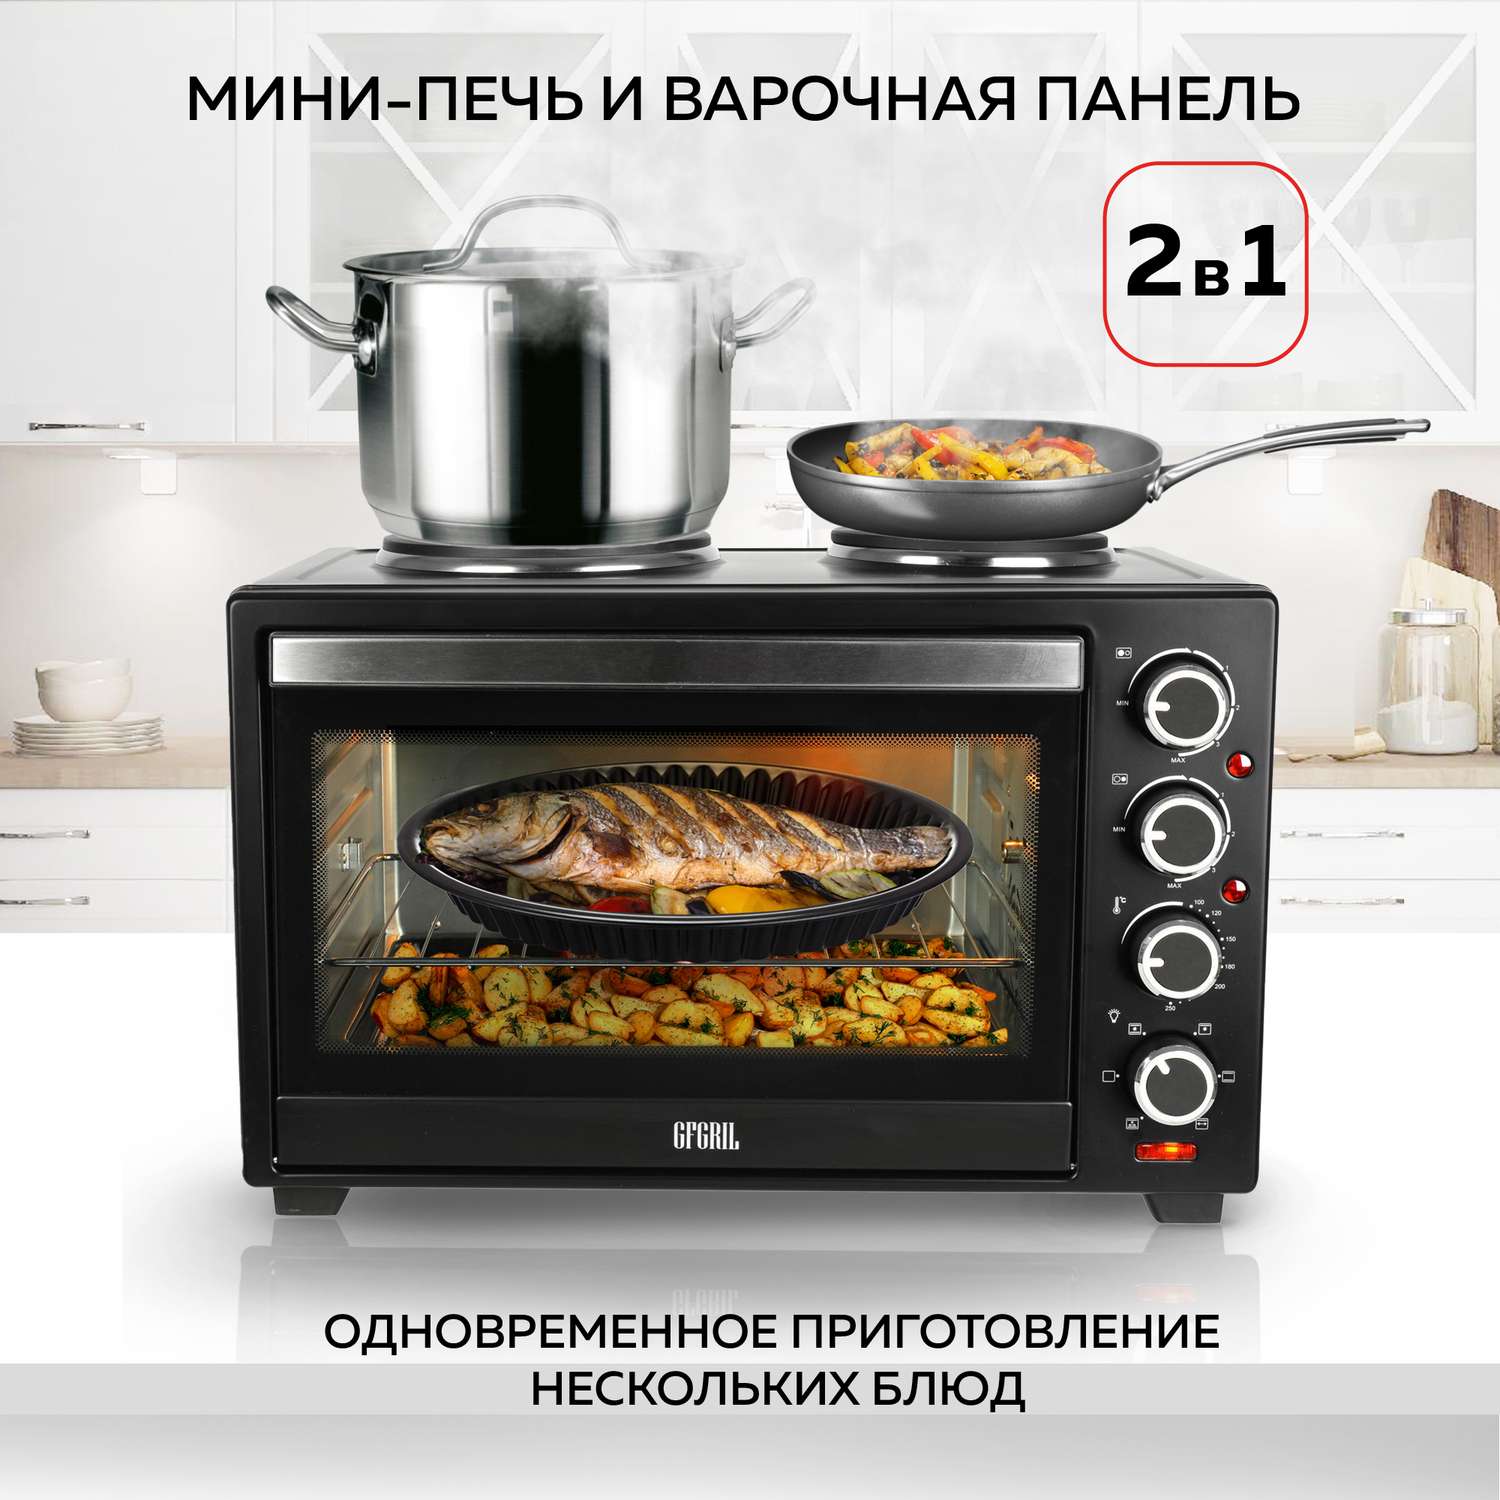 Мини-печь GFGRIL Многофункциональная GFO-40 духовка с 2 конфорками - фото 2